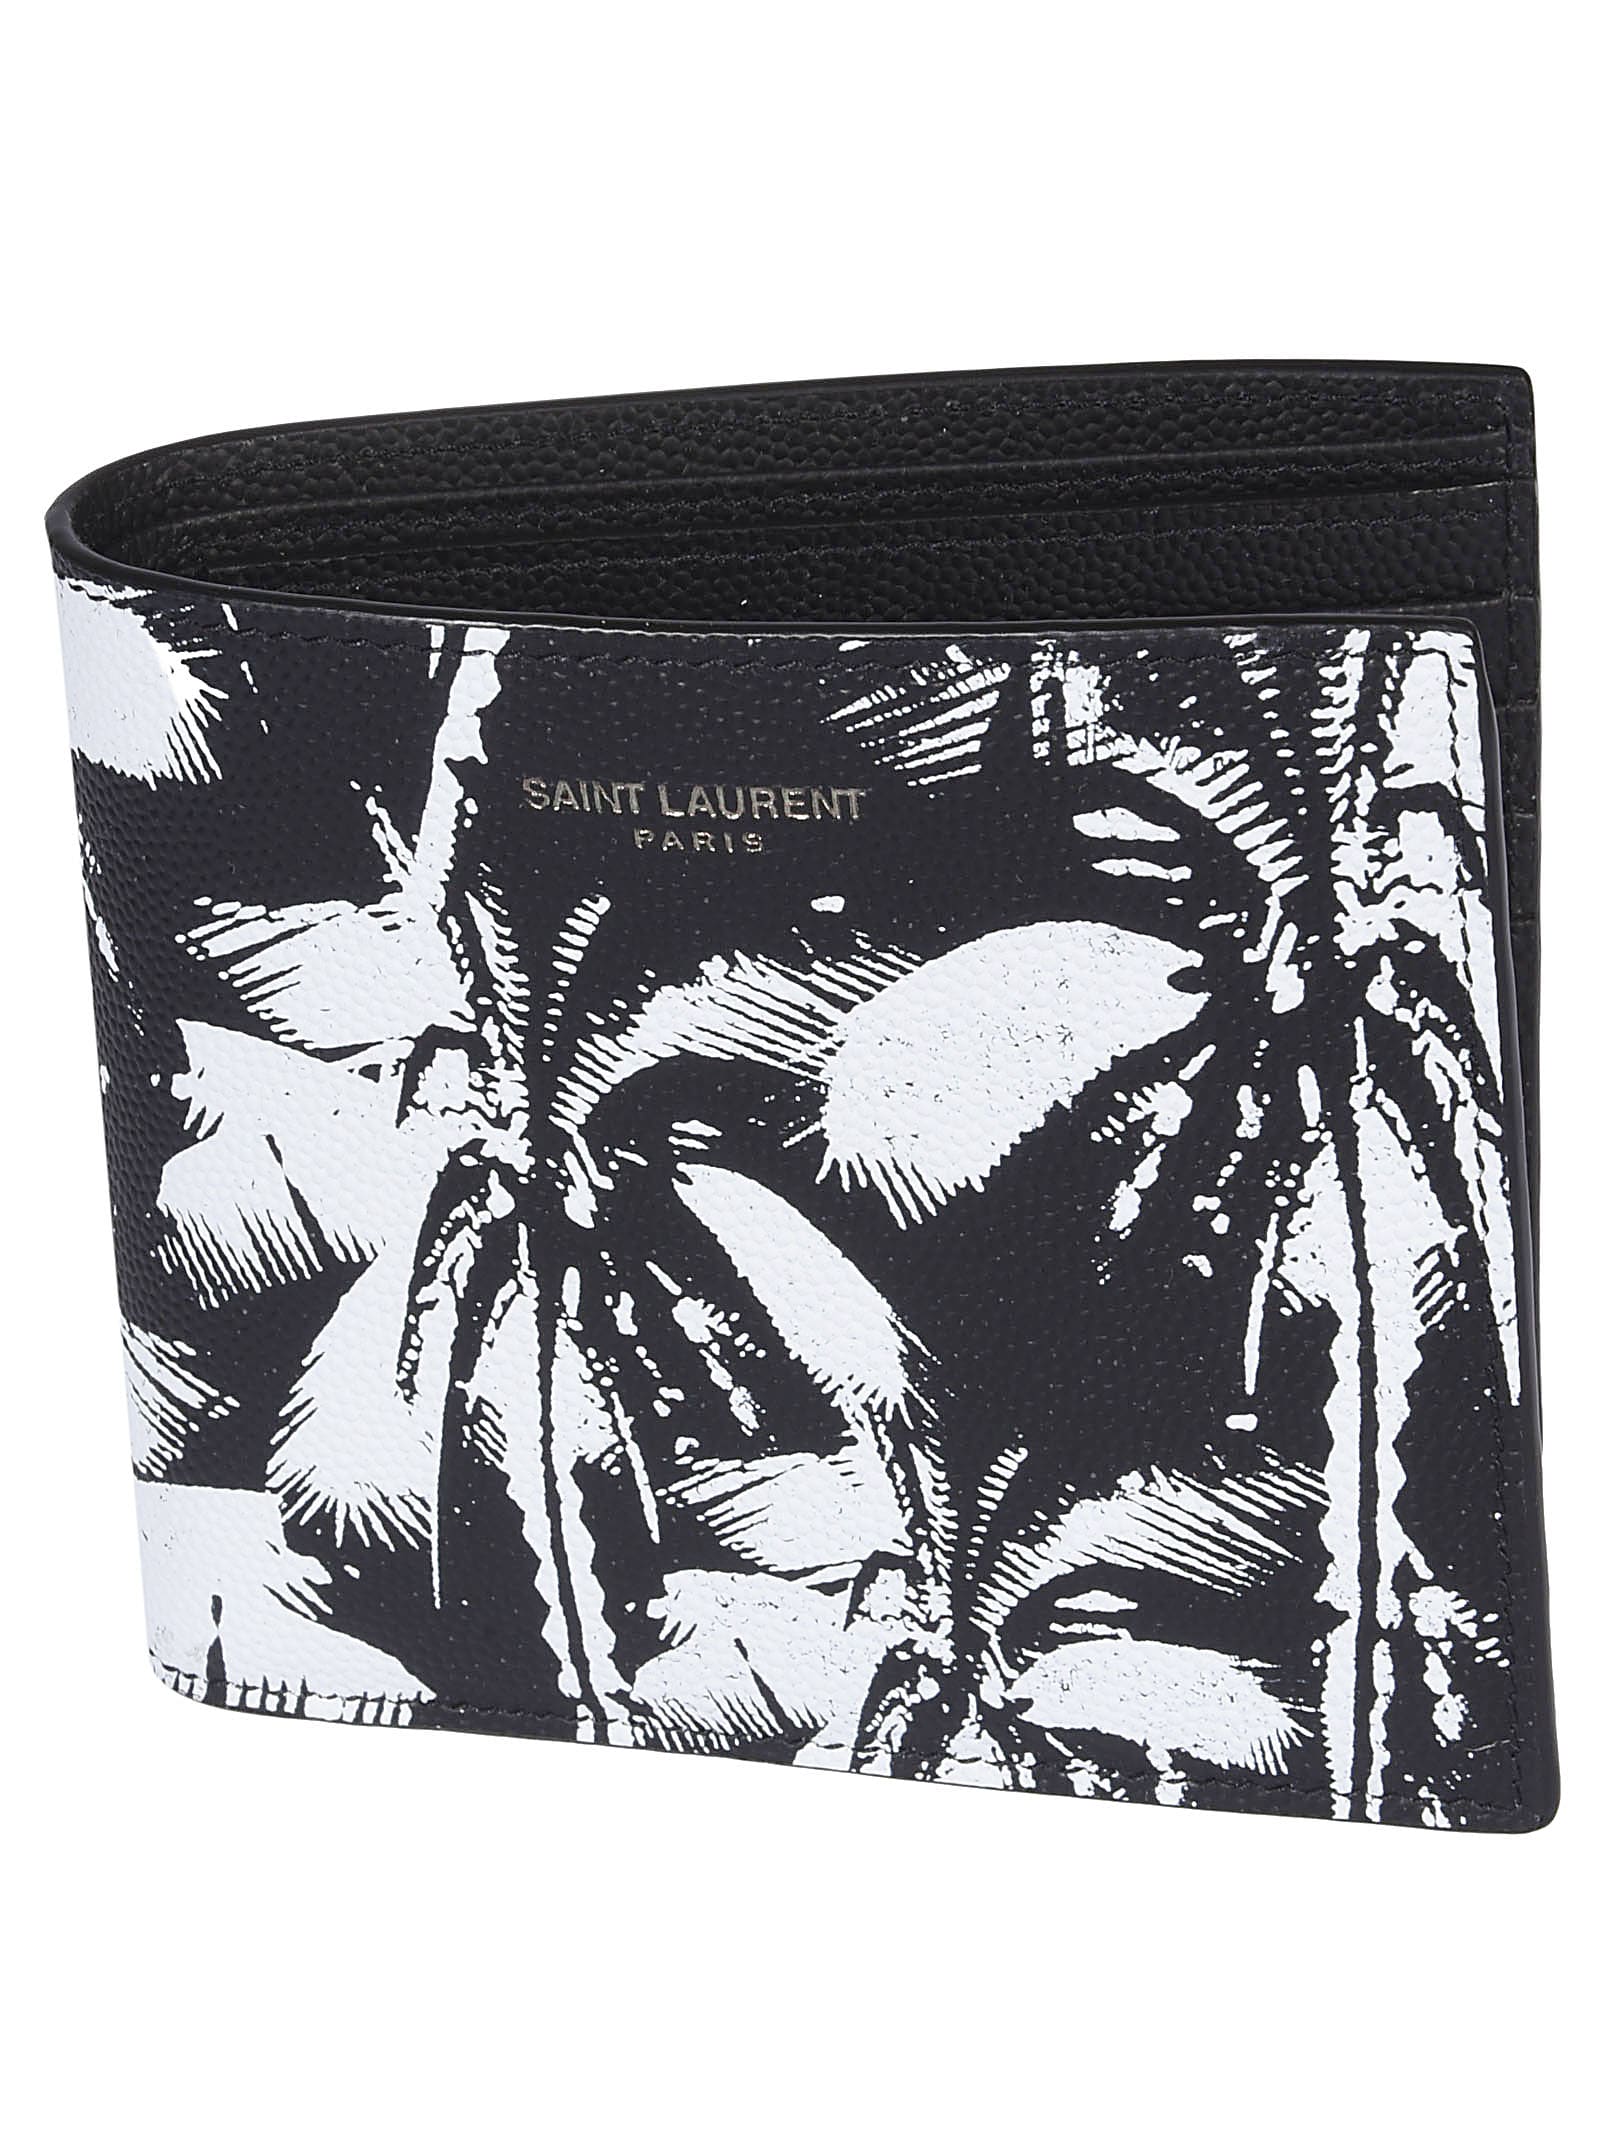 Saint Laurent Printed Wallet In Black/white